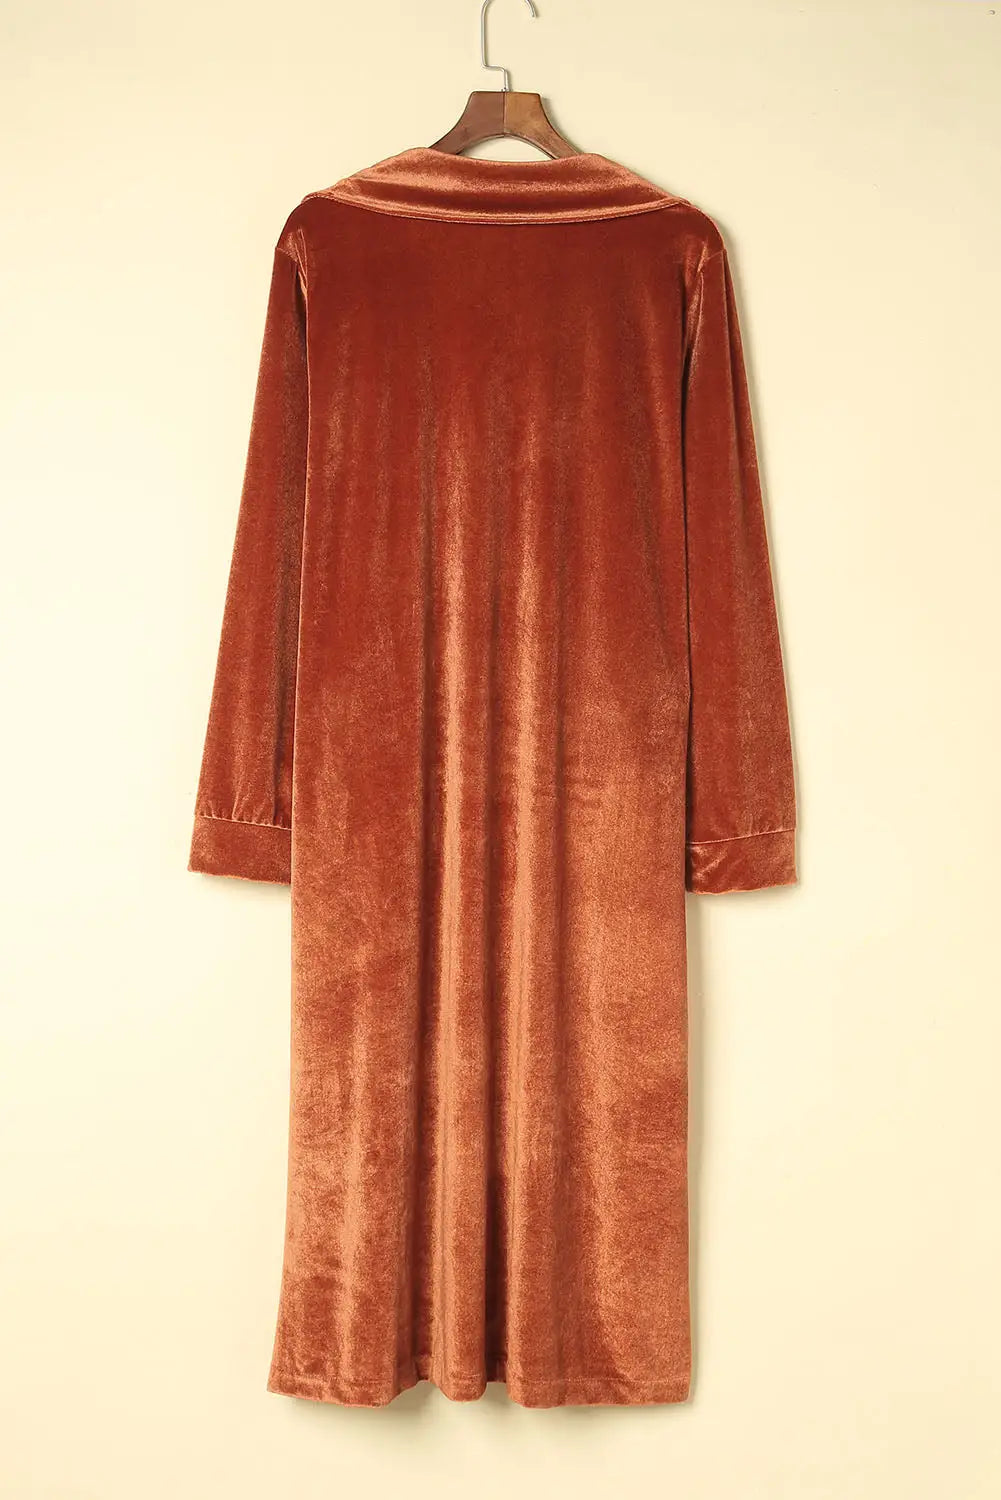 Brown retro velvet long sleeve pocket coat - coats